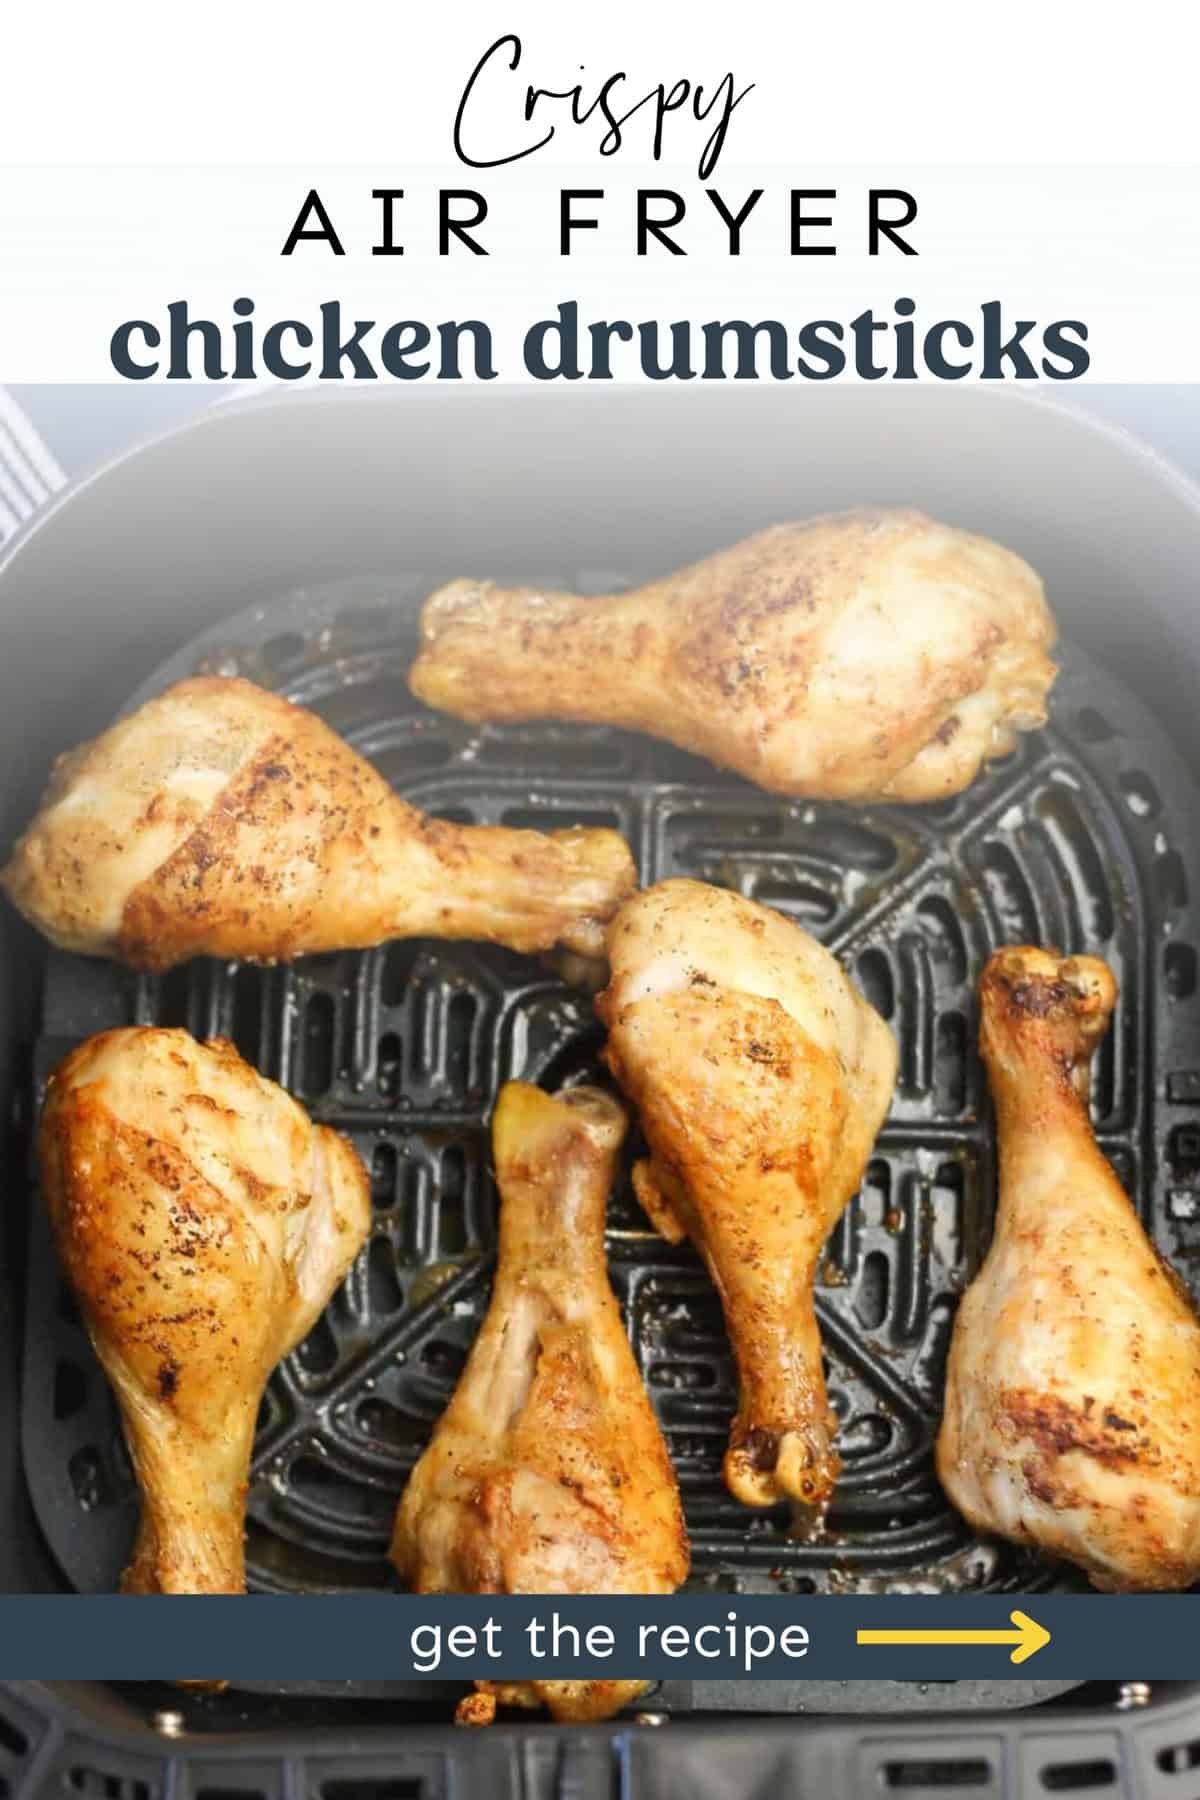 Chicken drumsticks in an air fryer basket.